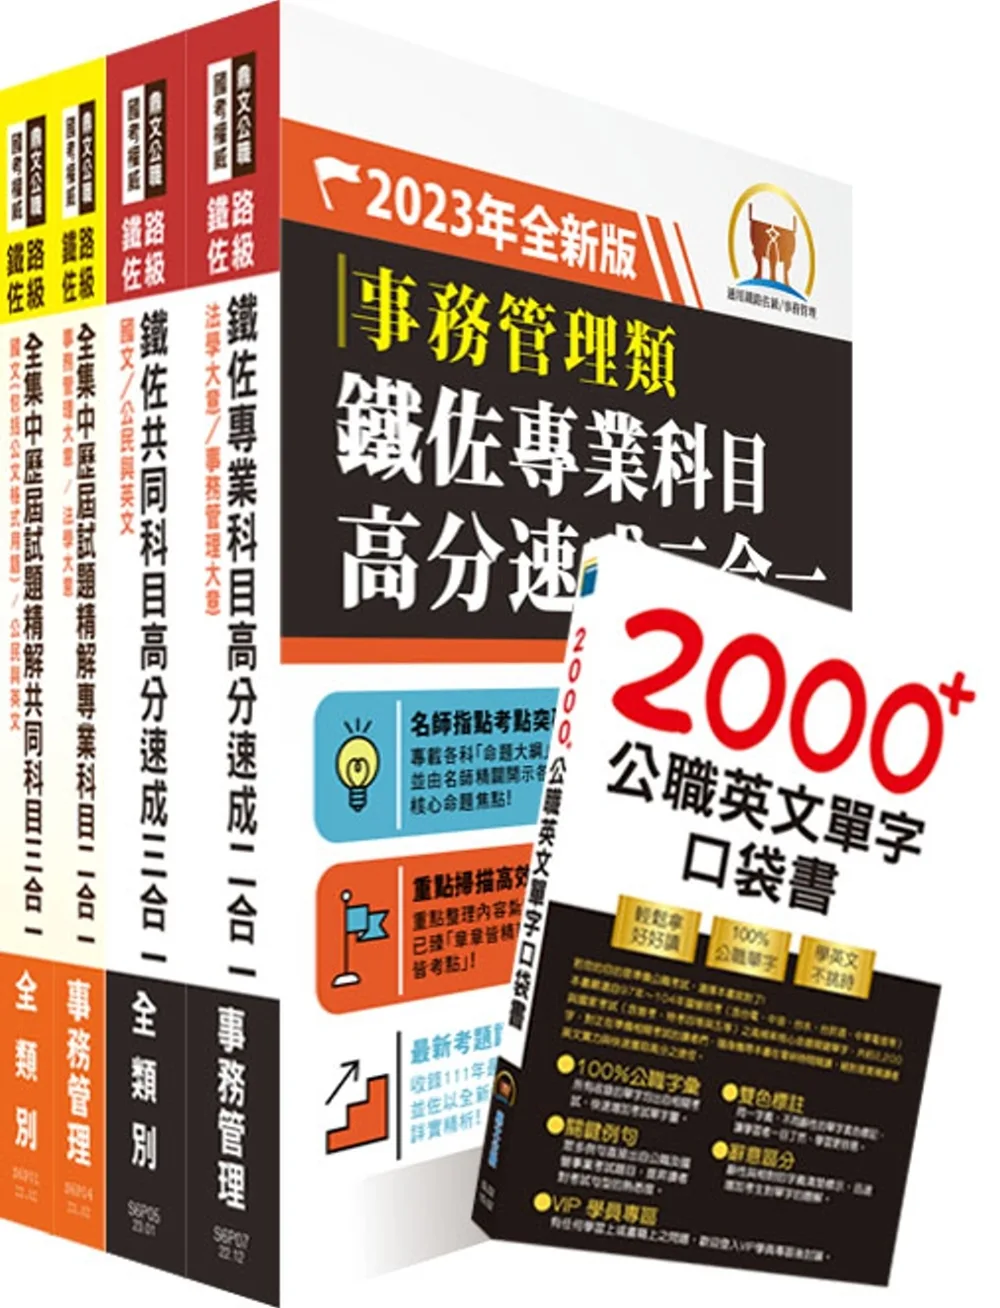 2023鐵路佐級•高分速成+歷屆試題精解【事務管理】完全攻略套書